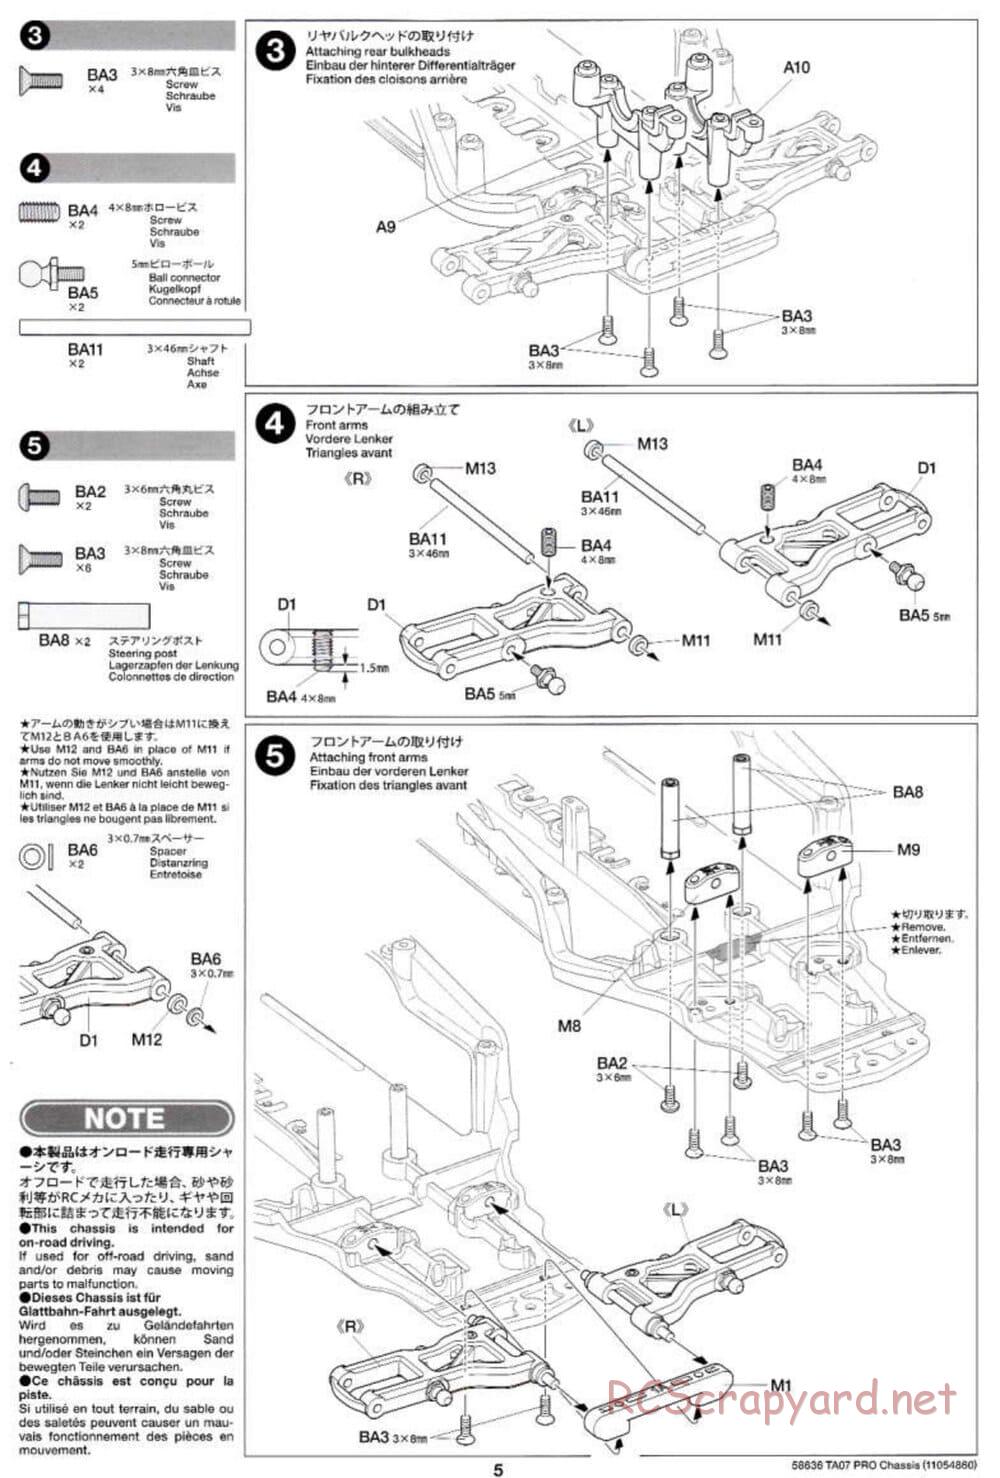 Tamiya - TA07 Pro Chassis - Manual - Page 5